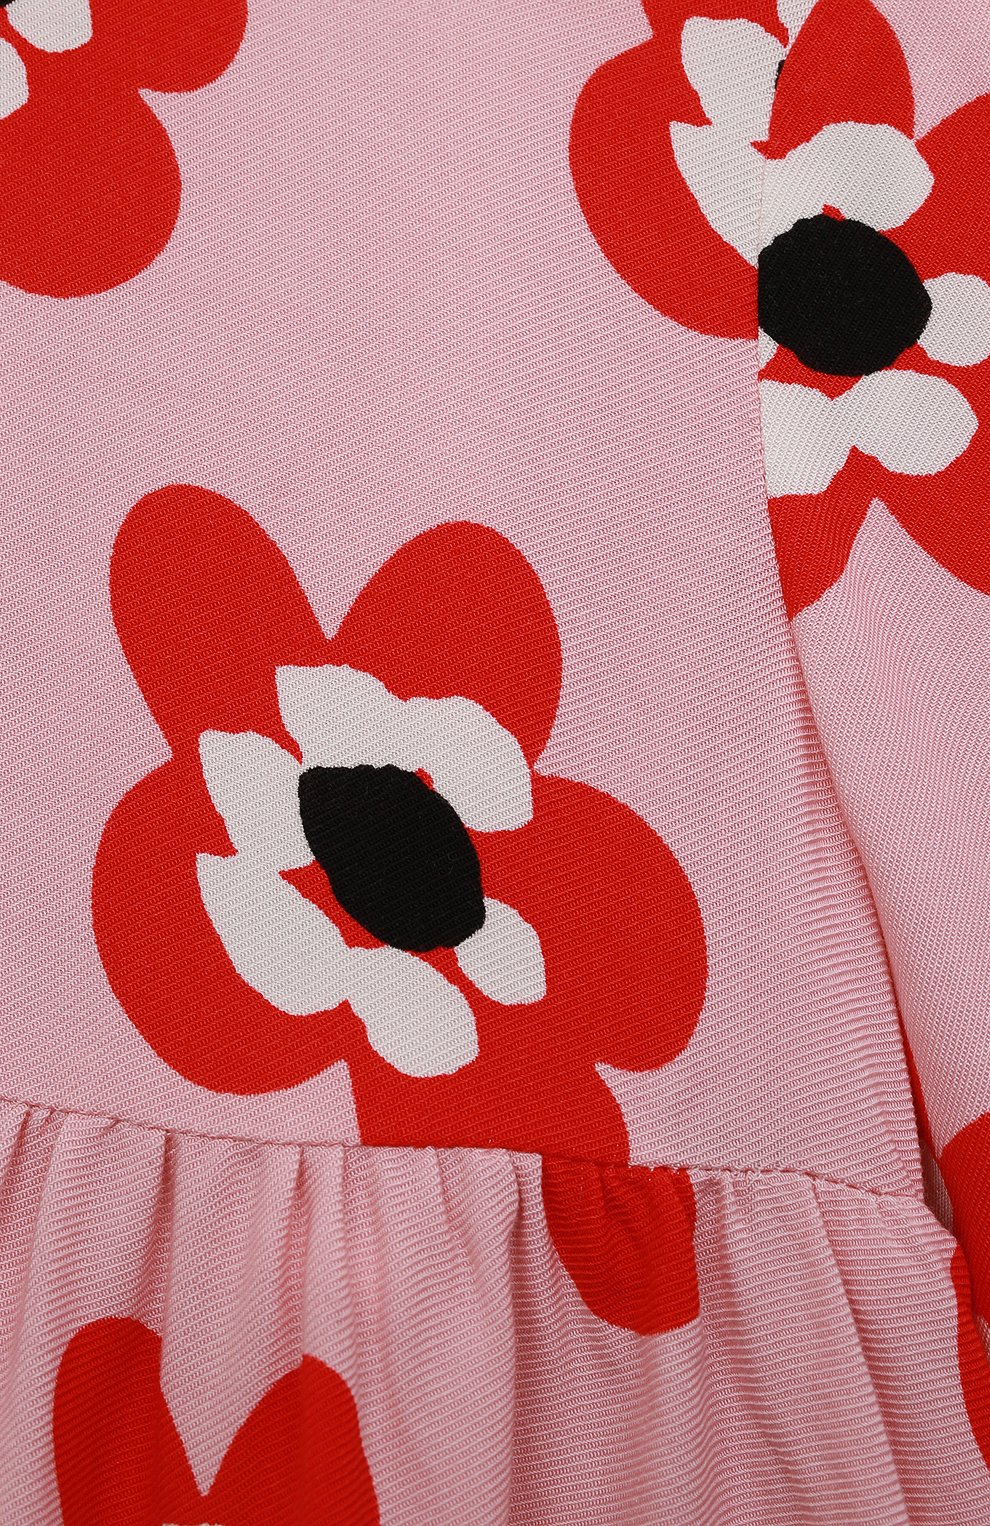 Женский комплект из платья и шорт STELLA MCCARTNEY светло-розового цвета, арт. 8R1040 | Фото 3